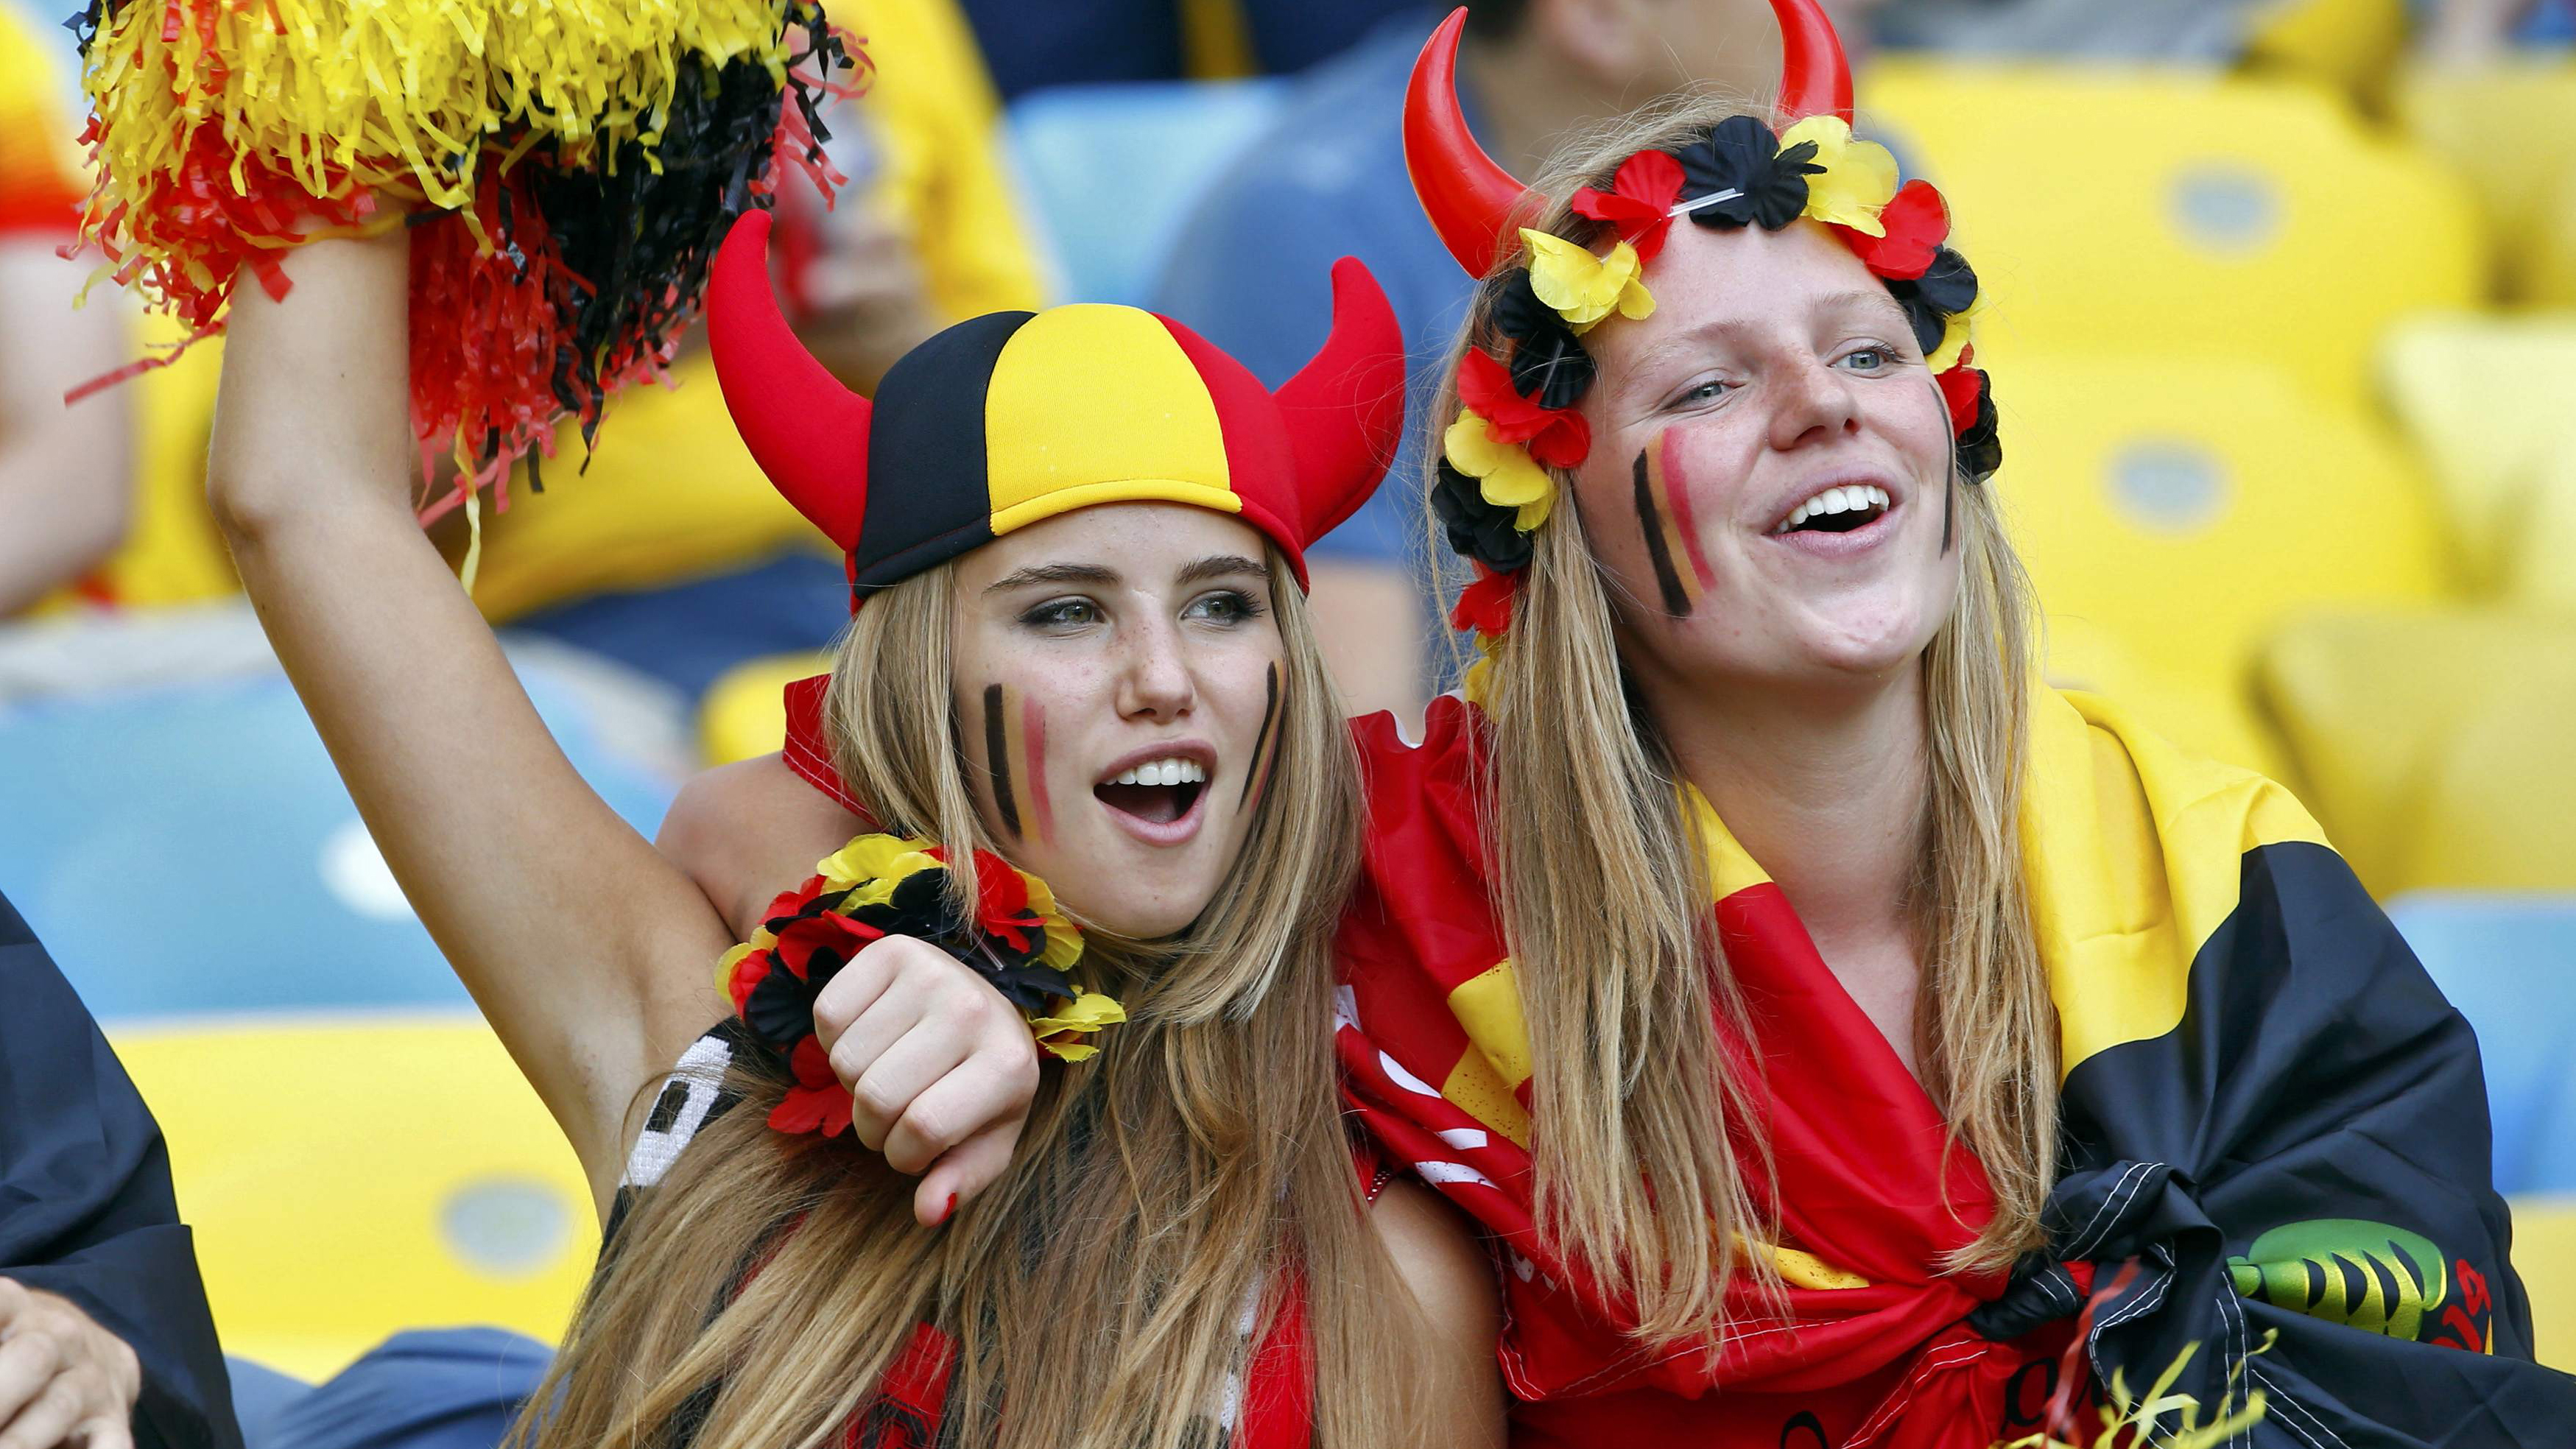 Axelle Despiegelaere Women FiFA World Cup Belgium Soccer Girls Fans Blonde Armpits 3498x1968